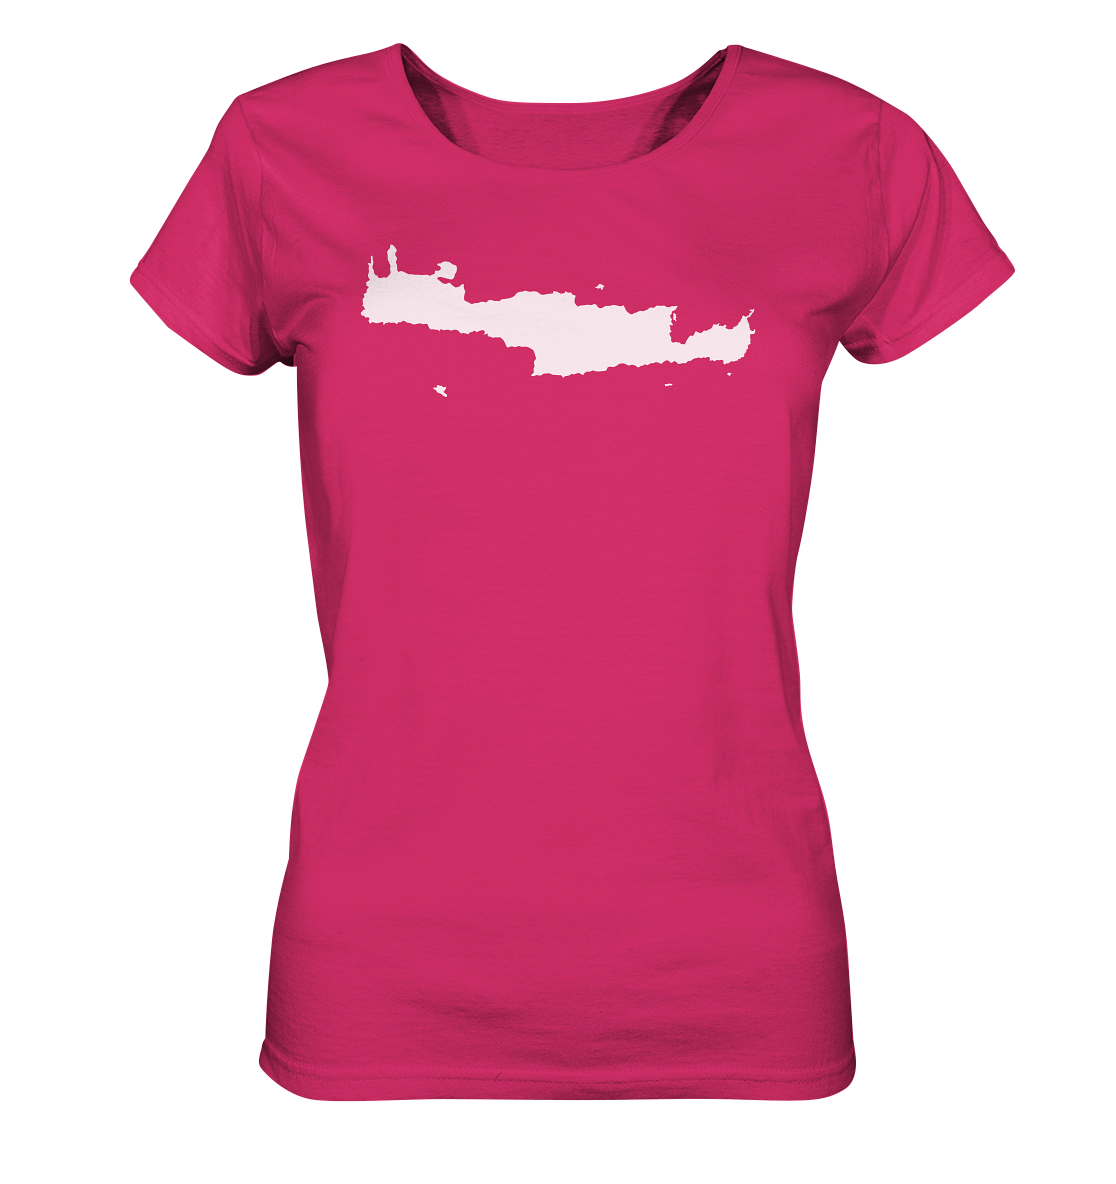 Kreta Insel Silhouette - Ladies Organic Shirt